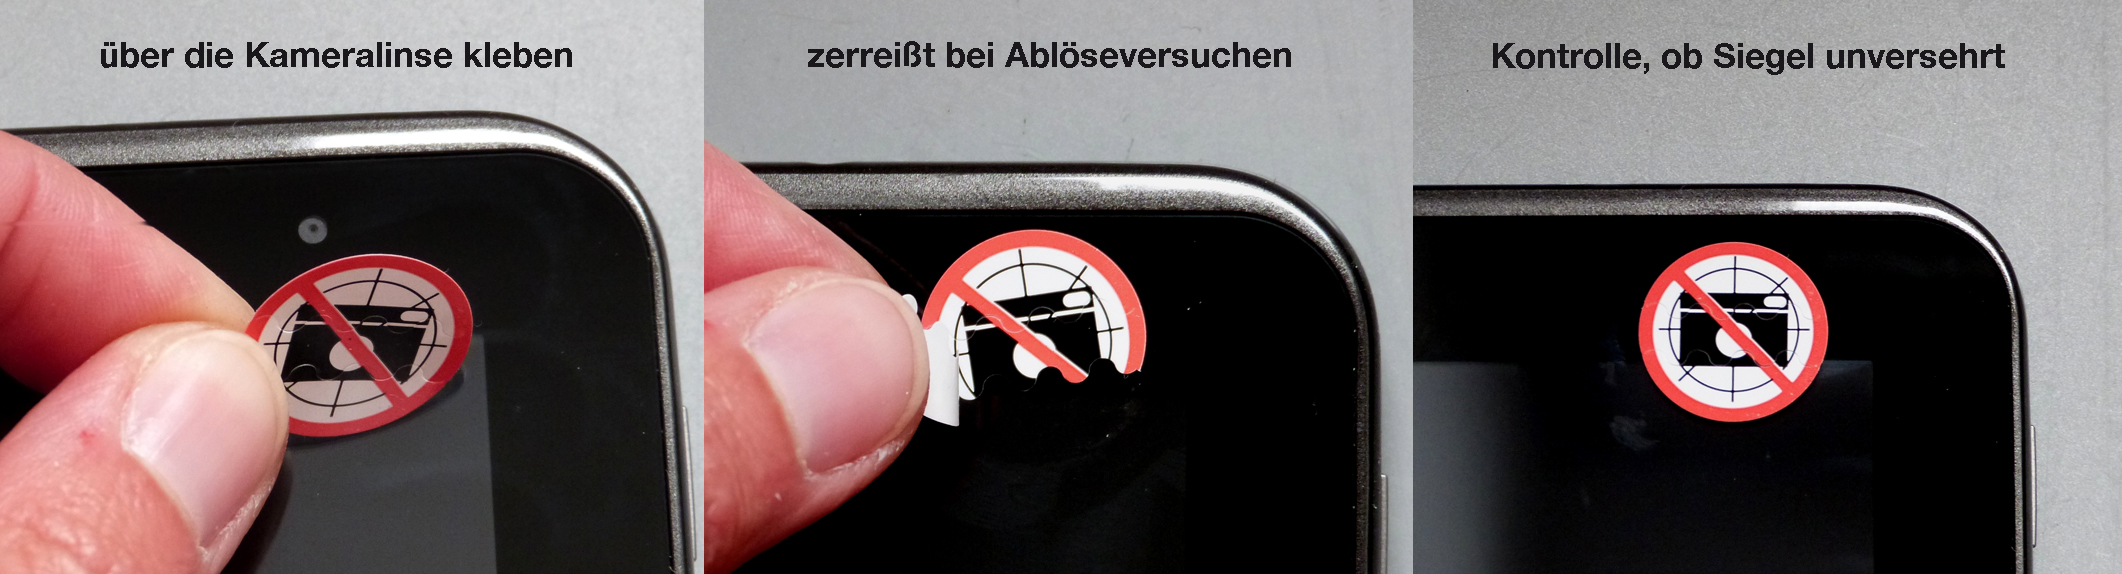 Fotoverbot-Siegel für Kameralinse beim Smartphone zum Verhindern von unerwünschten Aufnahmen